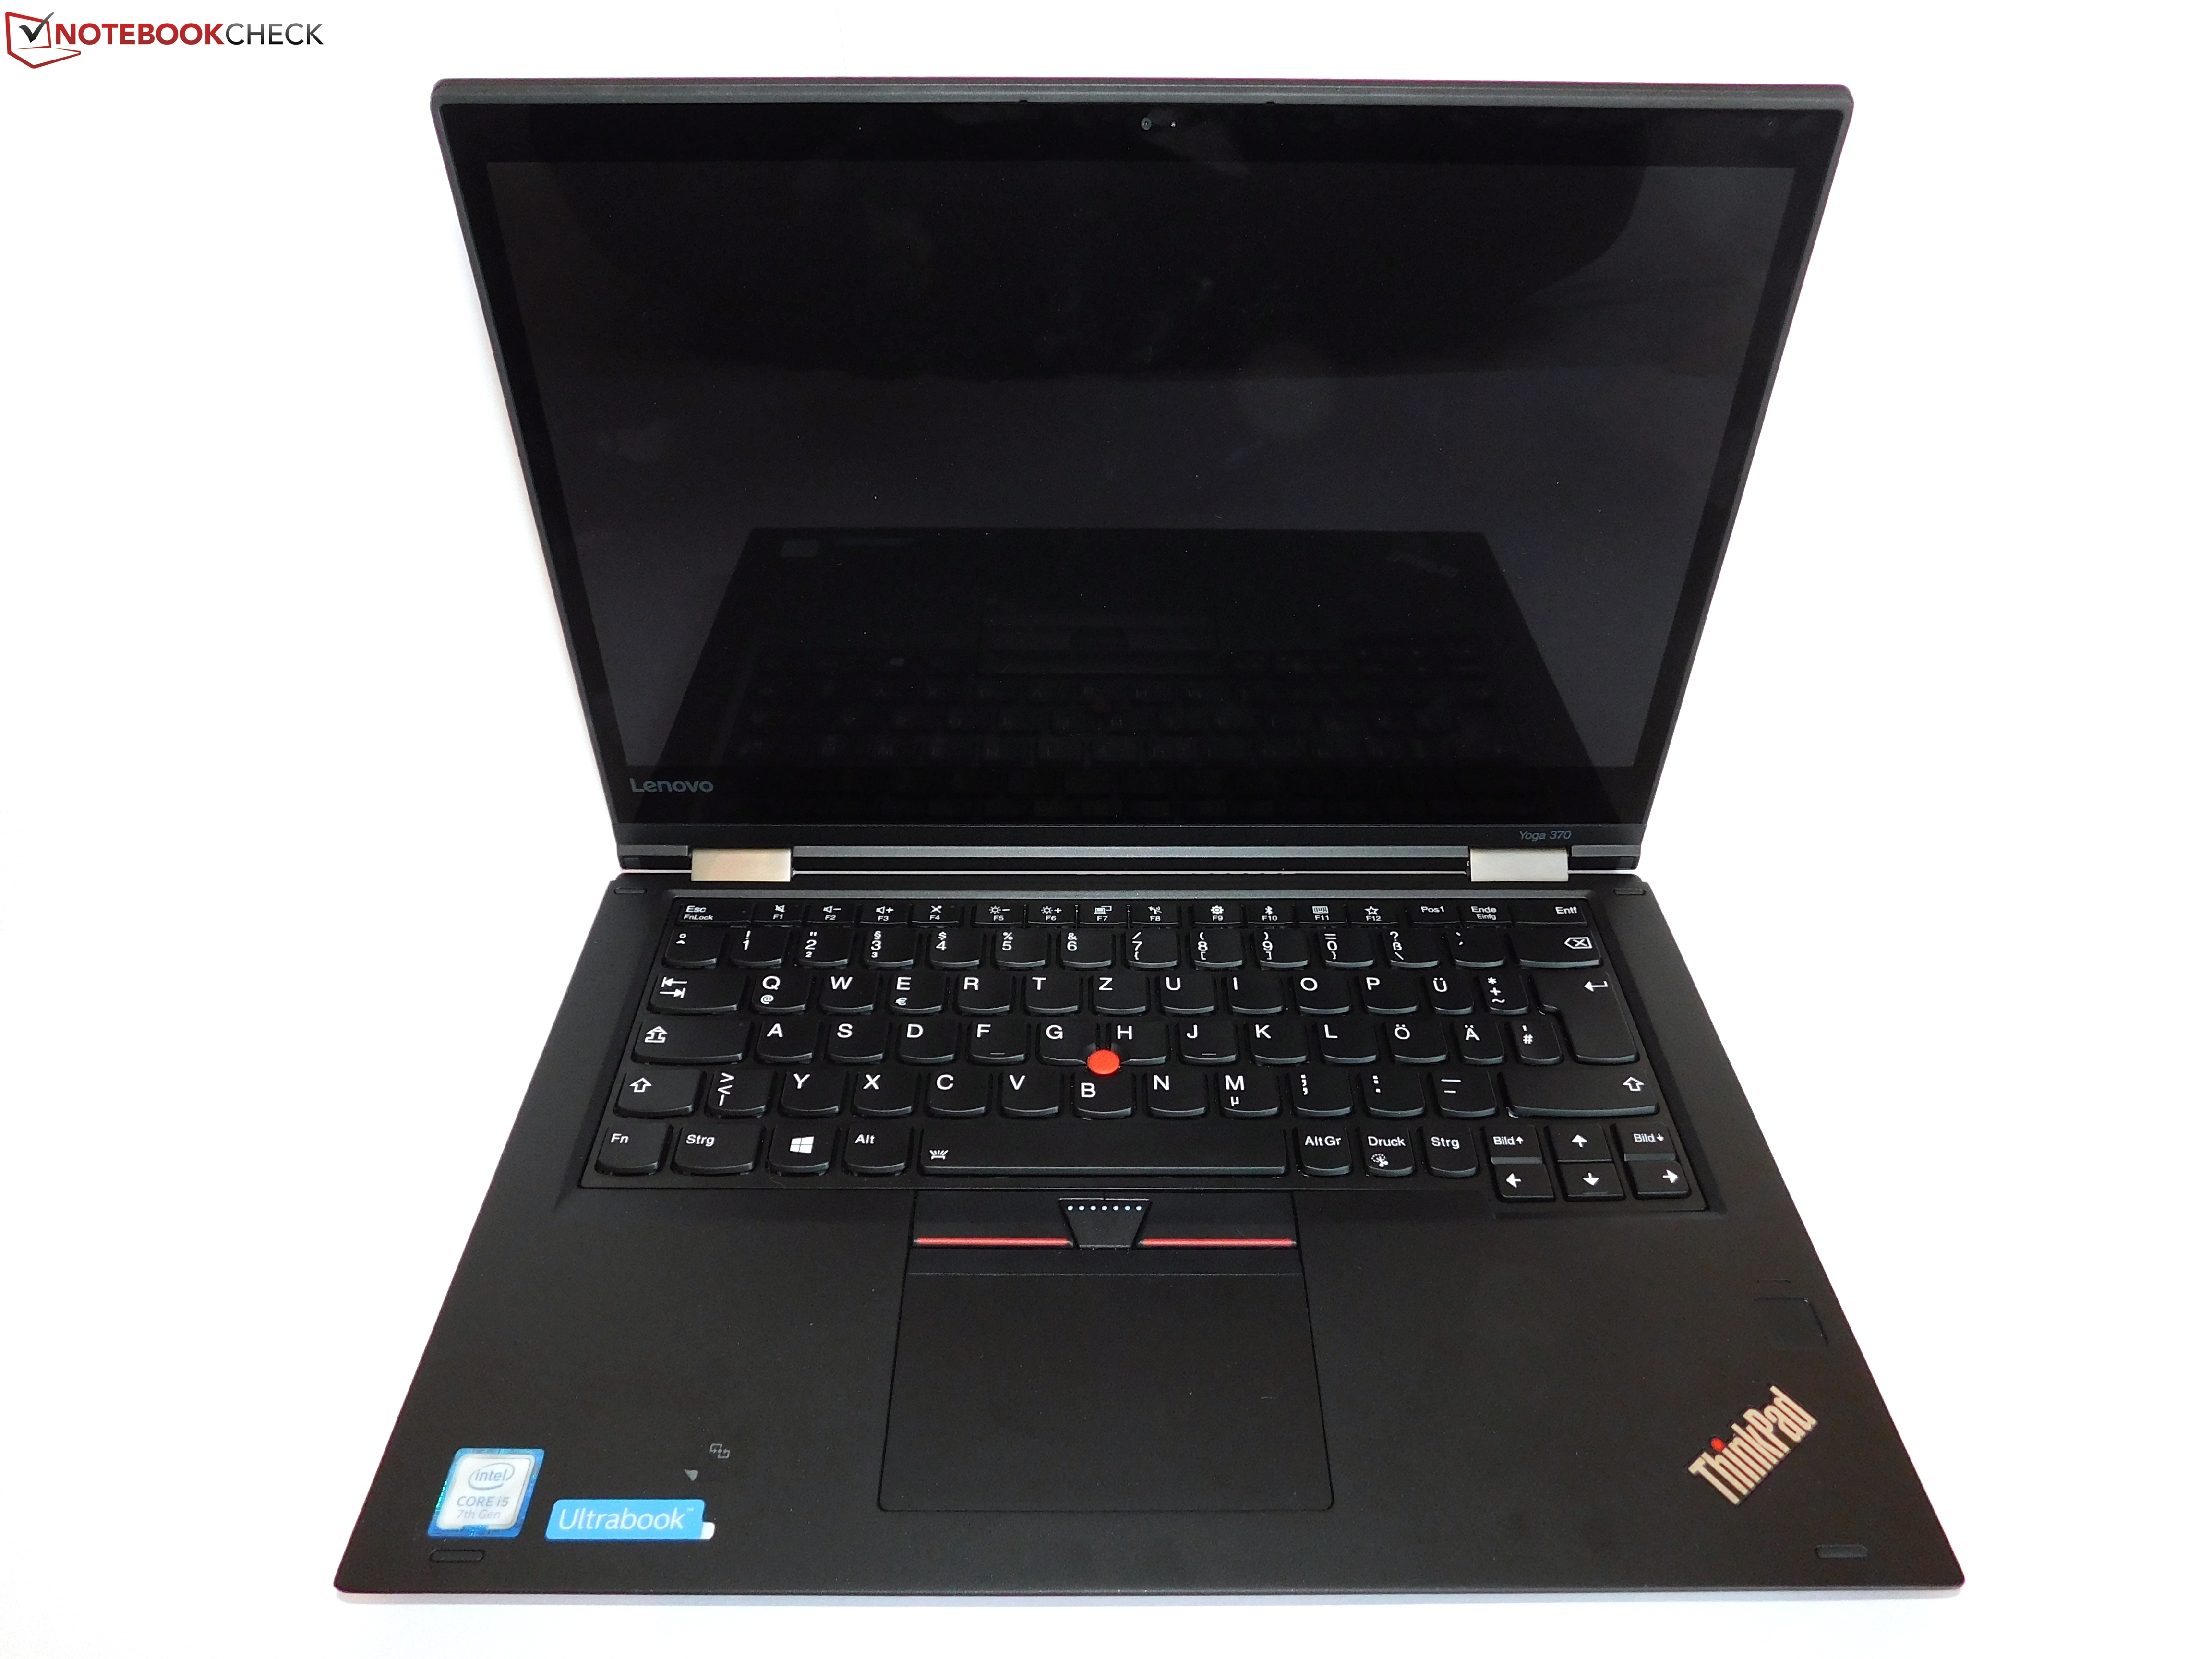 Lenovo ThinkPad Yoga 370 (7200U, FHD) Convertible Review